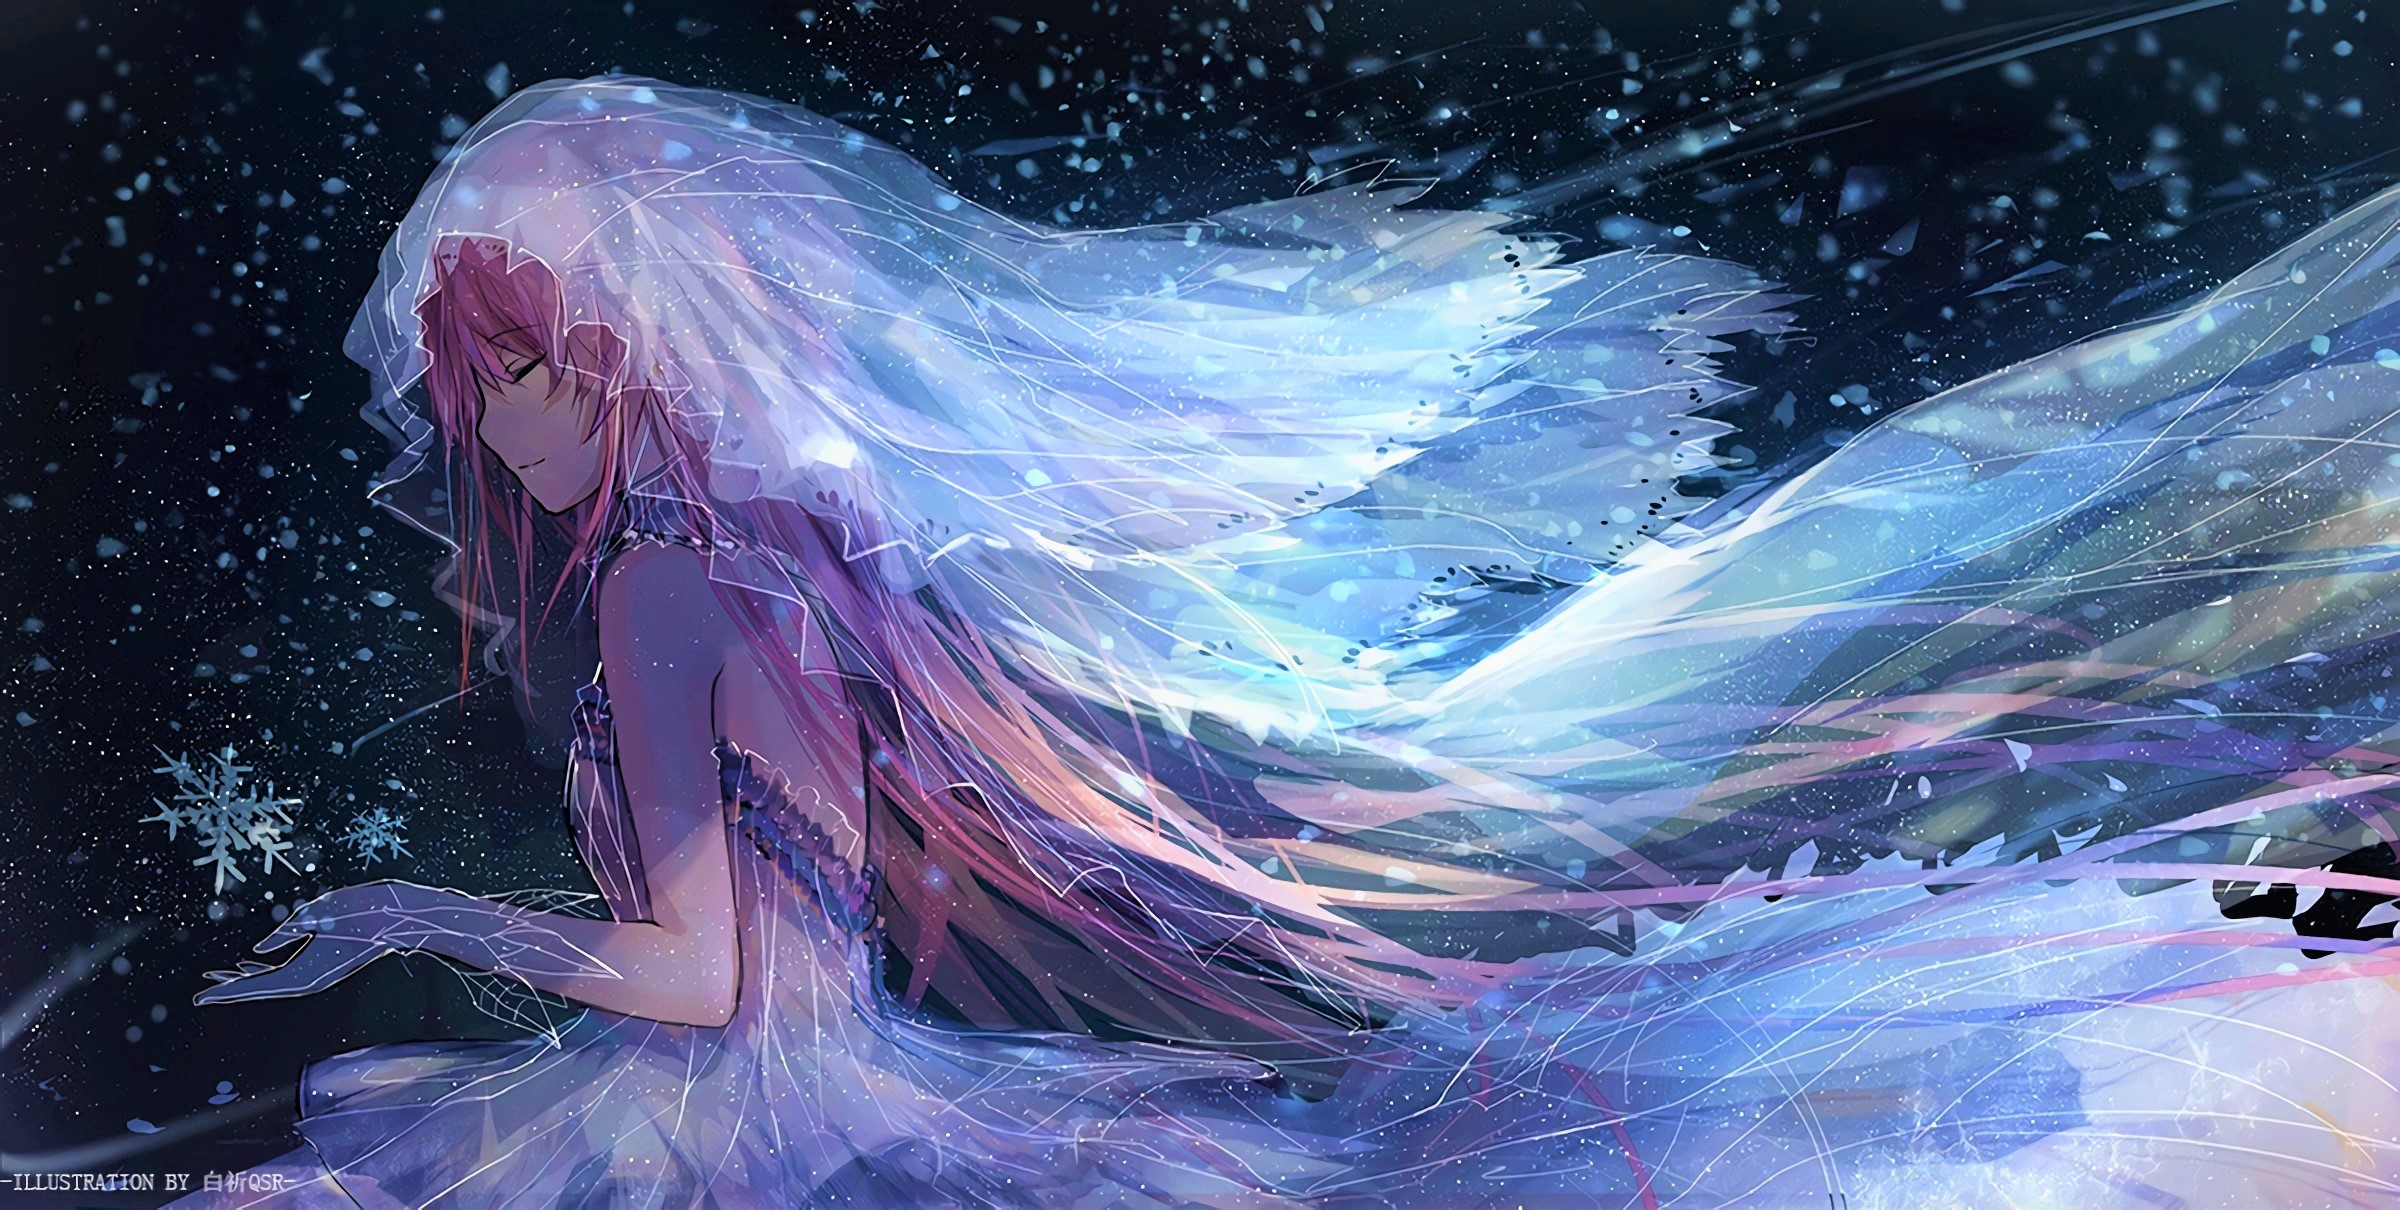 anime winter wallpaper,cg artwork,cielo,personaje de ficción,ilustración,espacio